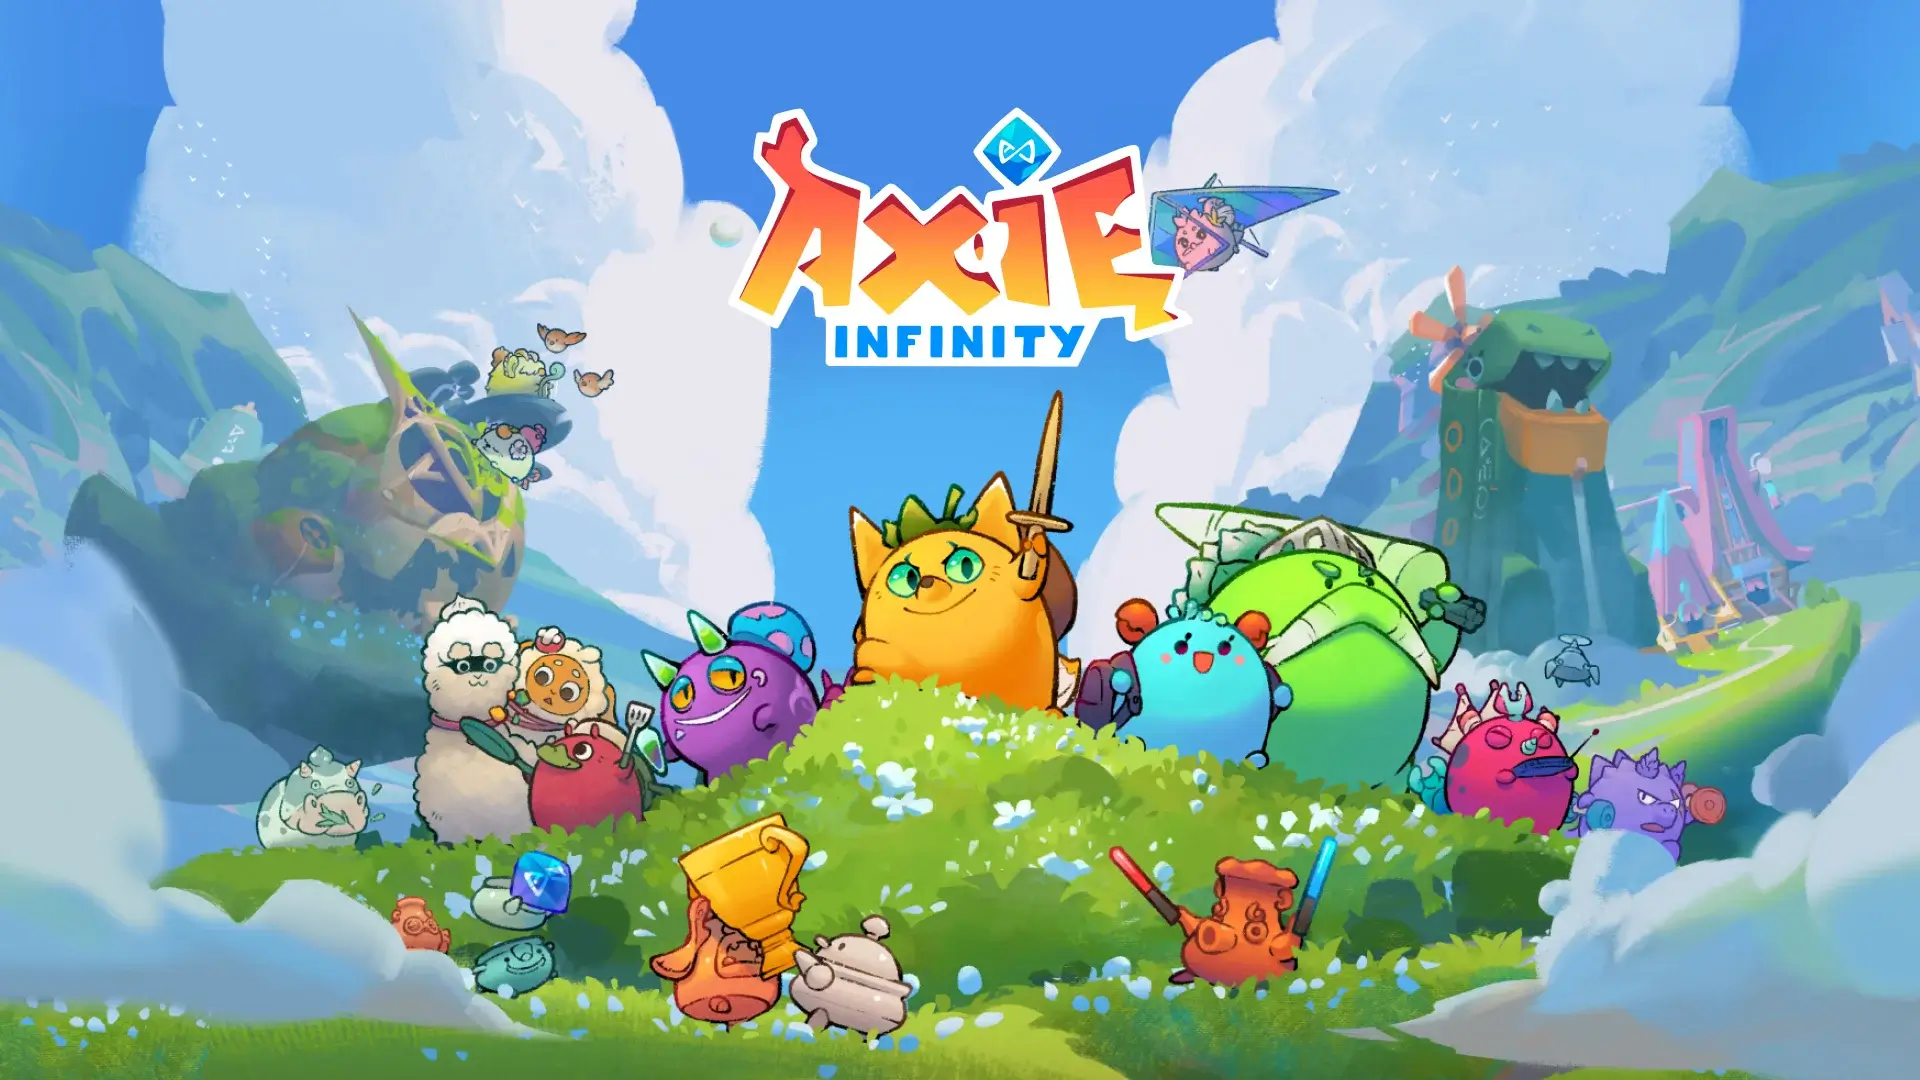 เกม Axie Infinity